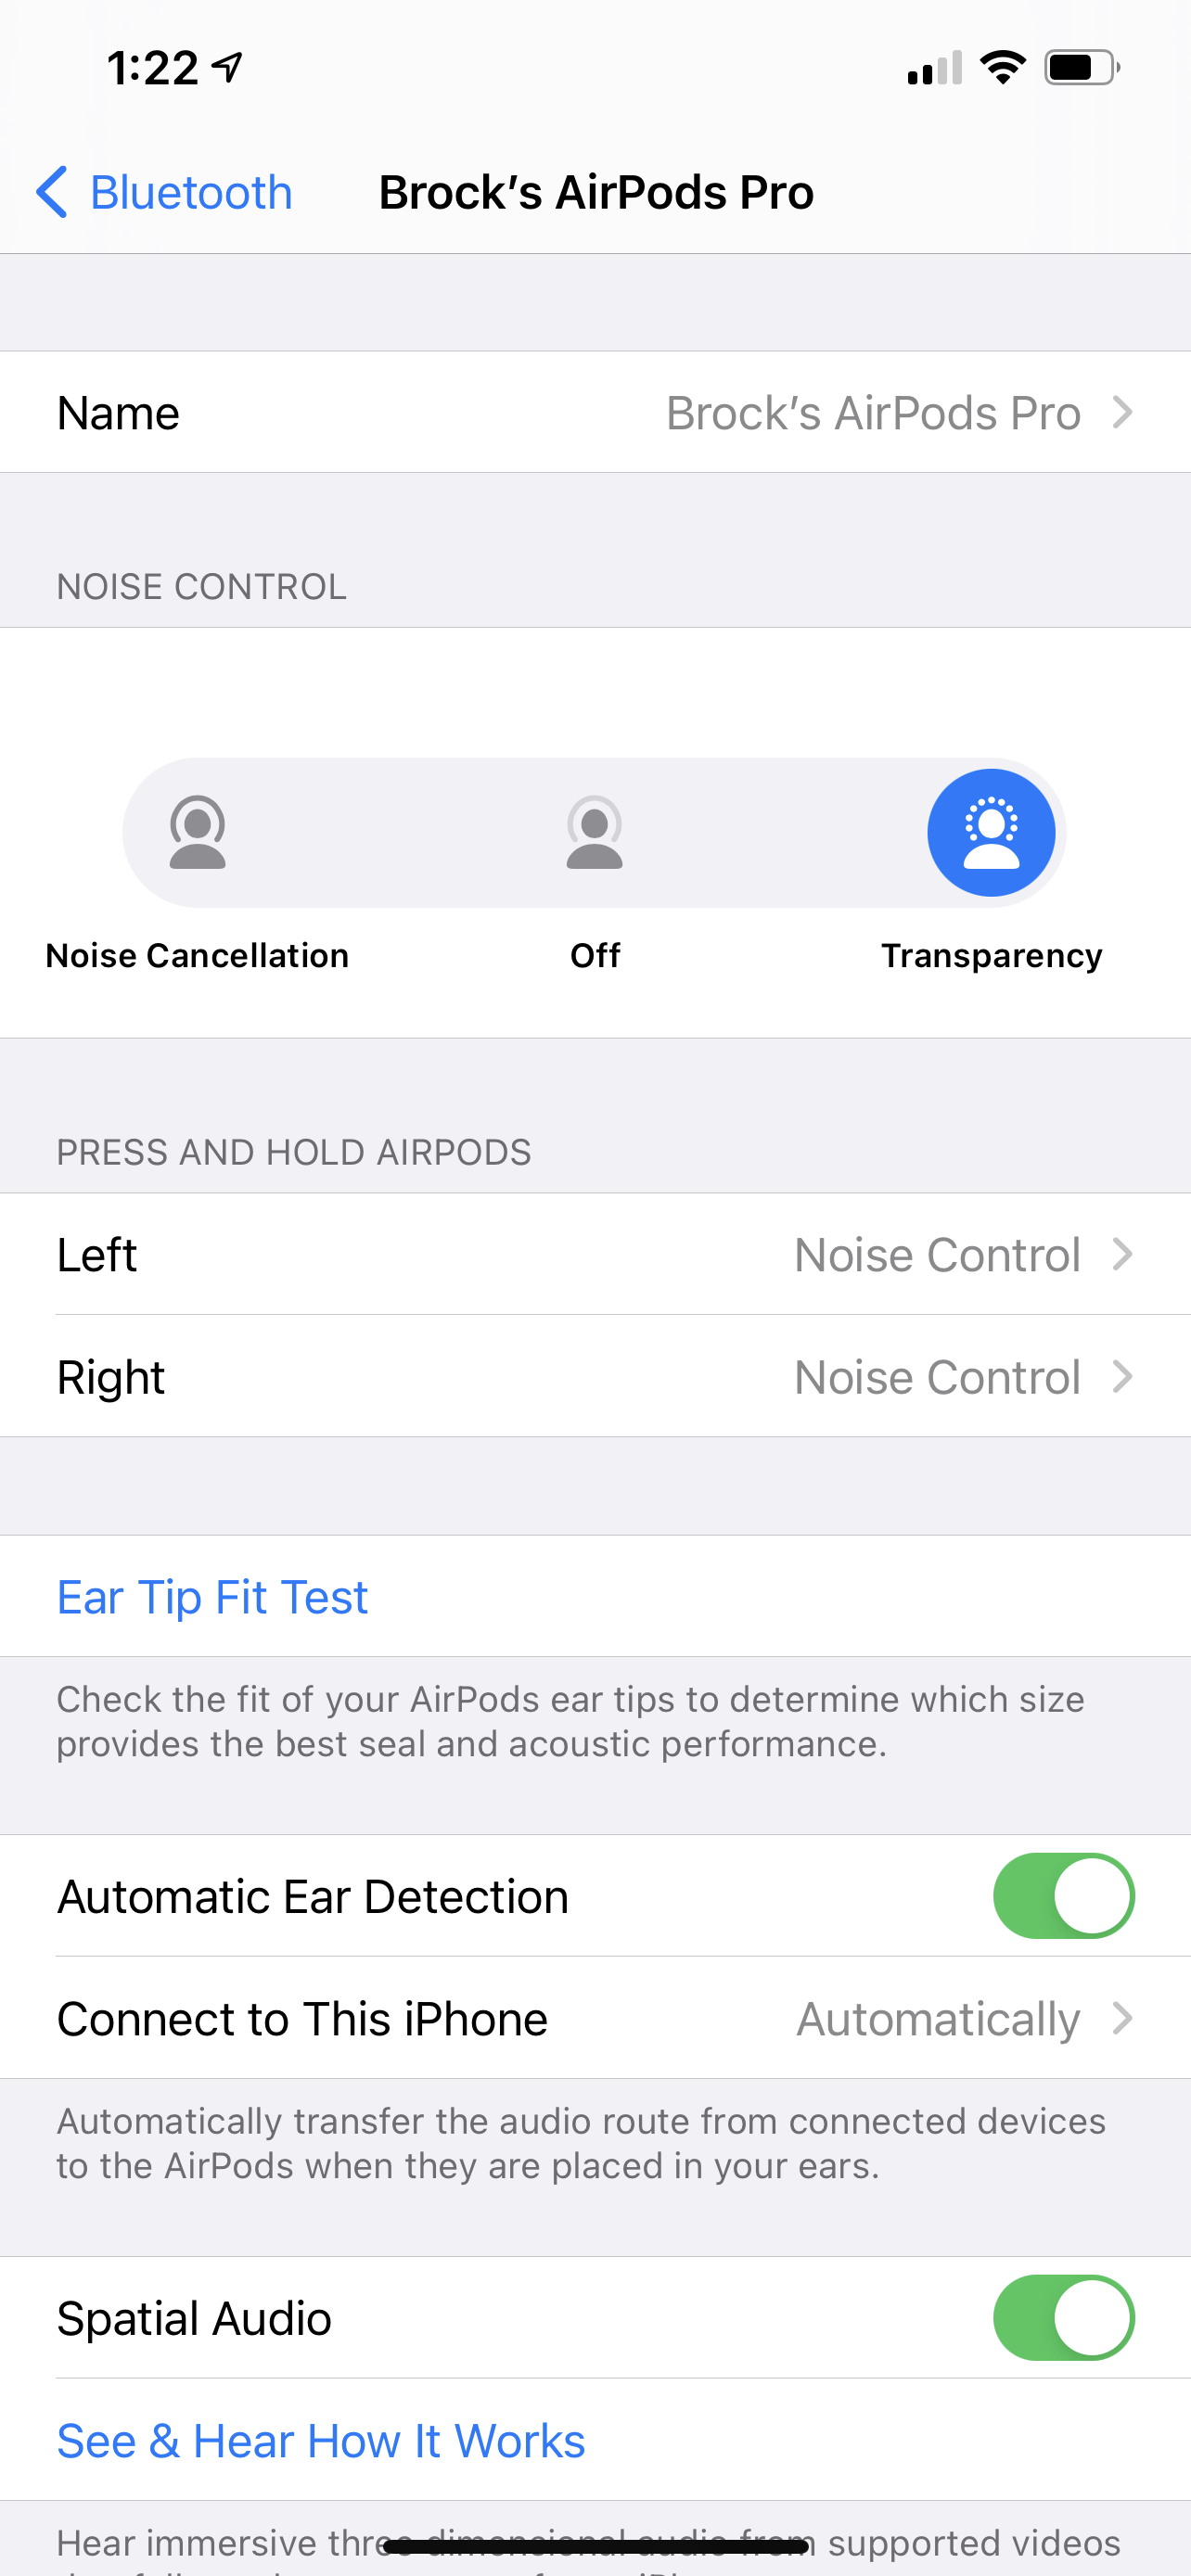 dråbe frokost Ekspert AirPod pro settings aren't saving - Apple Community